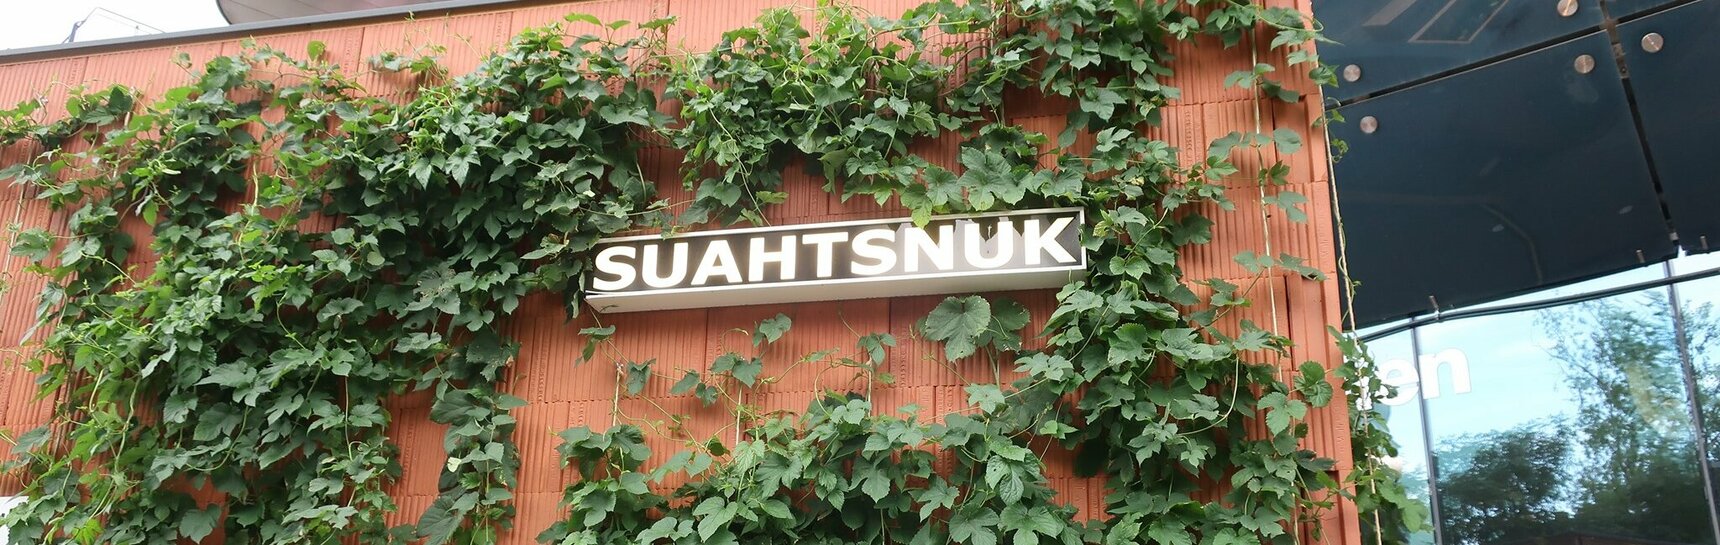 Nahaufnahme der Leuchtschrift "Suahtsnuk" inmitten von Hopfenpflanzen